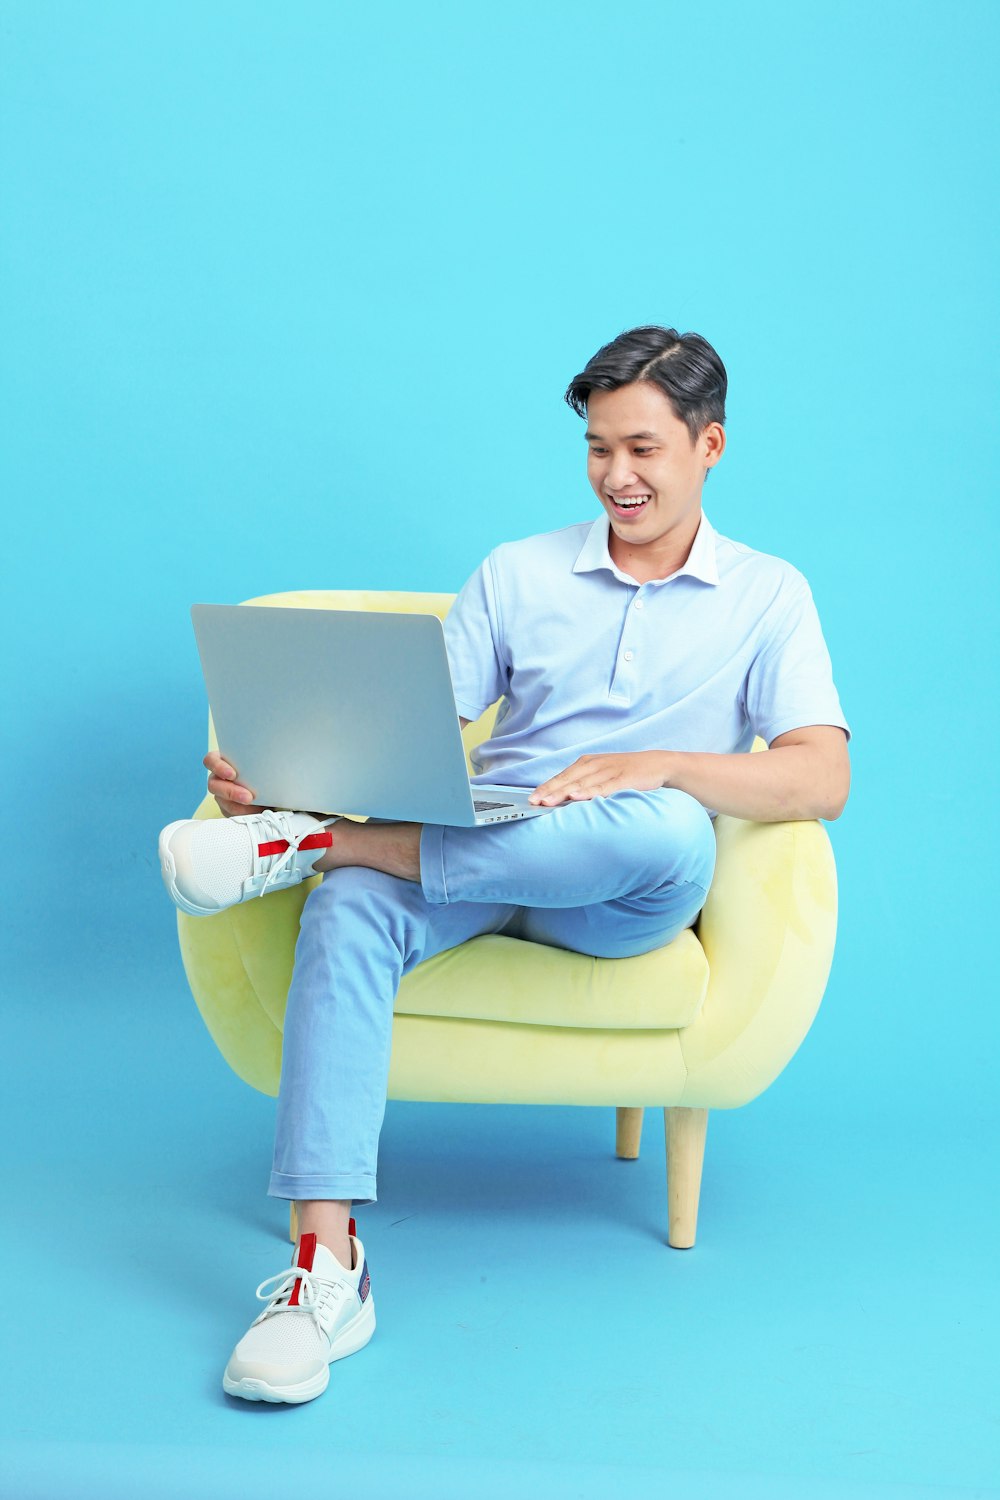 ノートパソコンを持って椅子に座っている男性